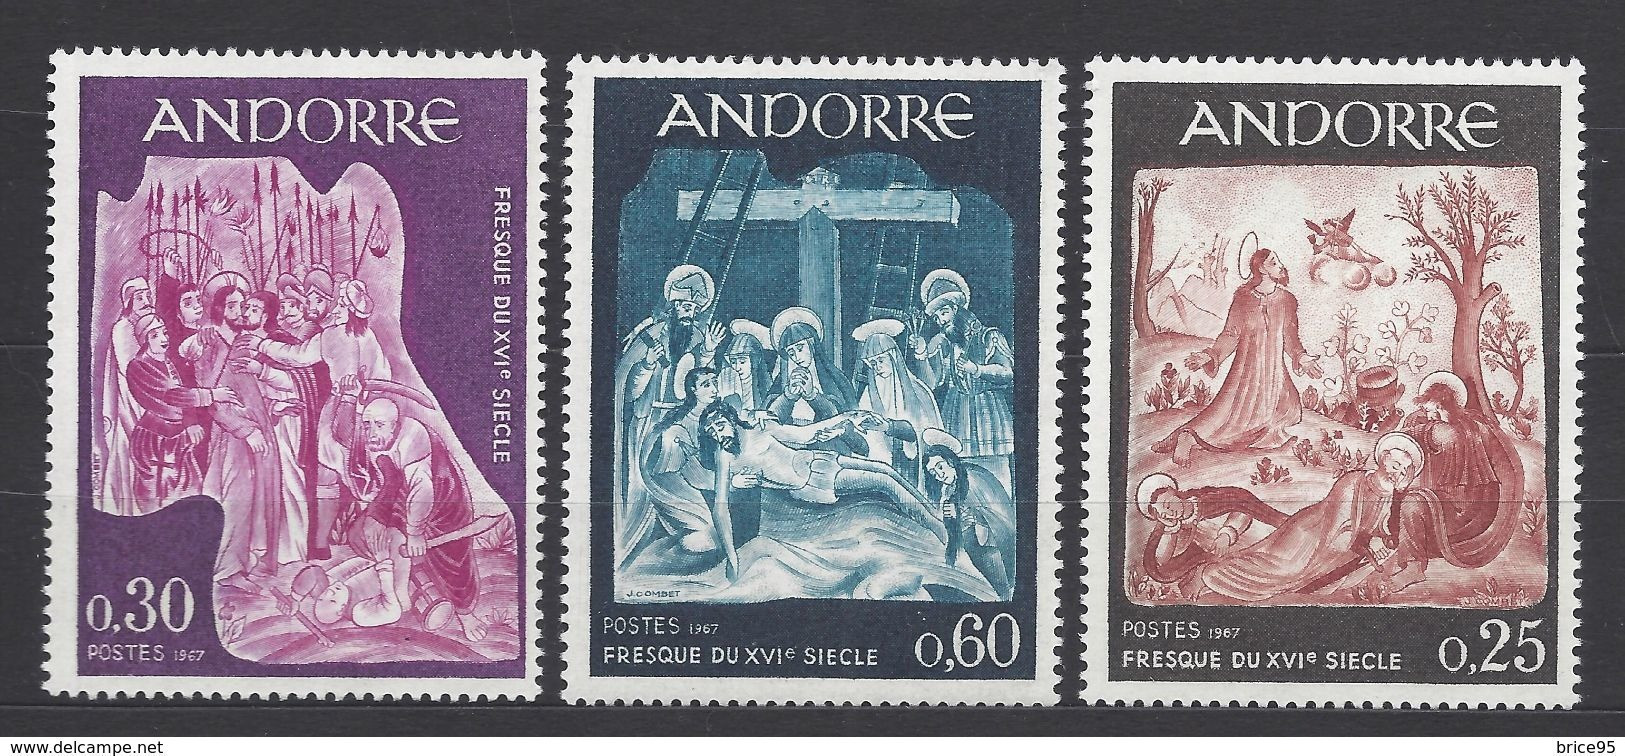 Andorre Français - YT N° 184 à 186 ** - Neuf Sans Charnière - 1967 - Neufs